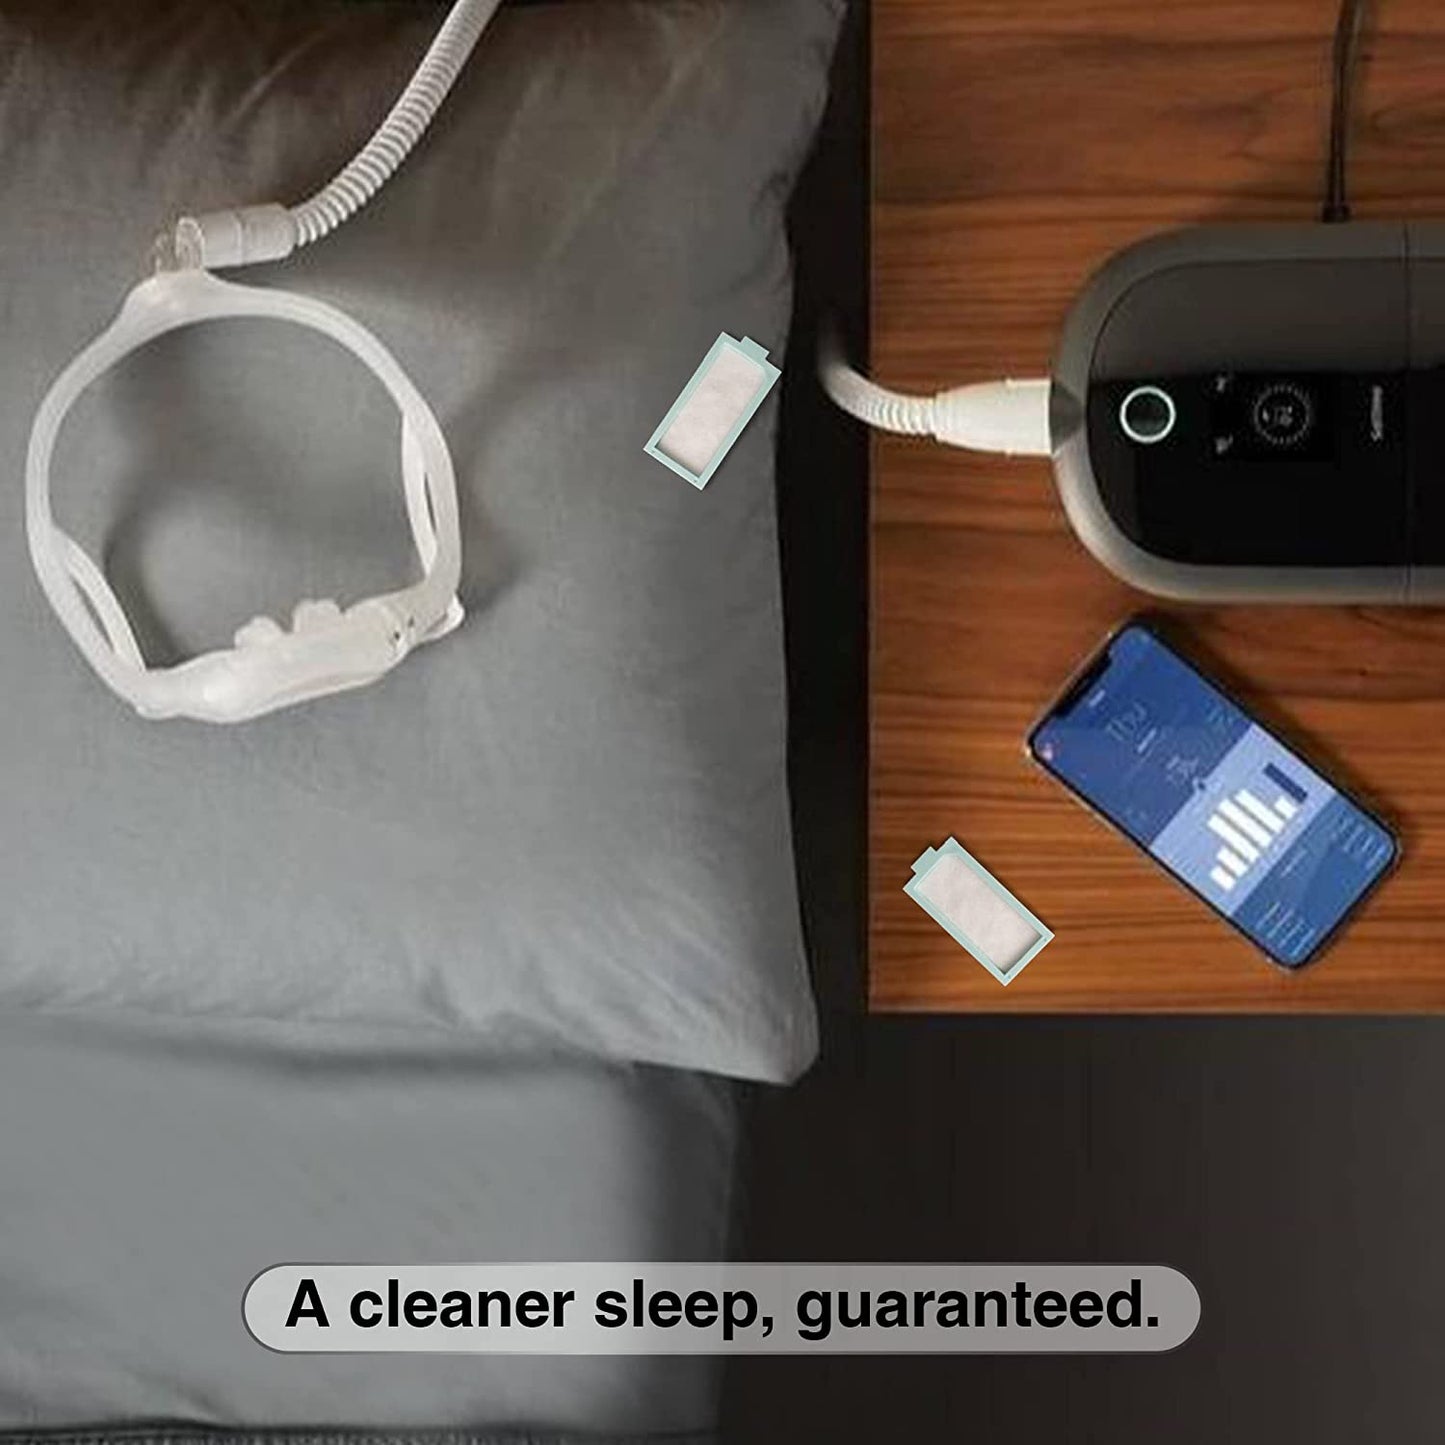 A cleaner sleep, guaranteed.